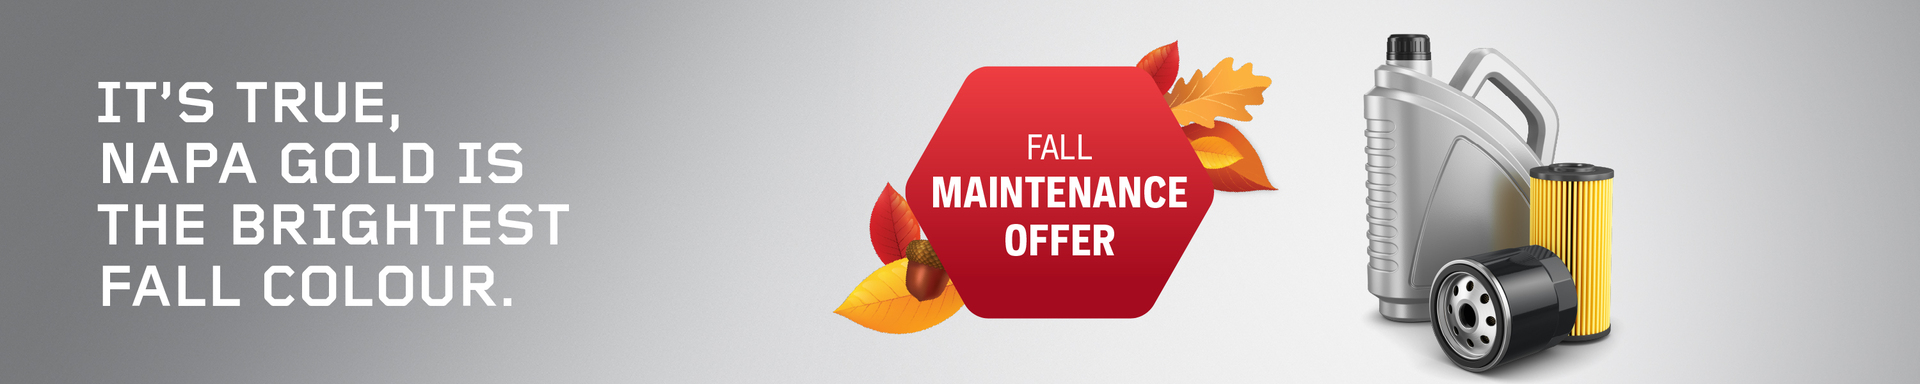 NAPA AUTOPRO fall maintenance promotion